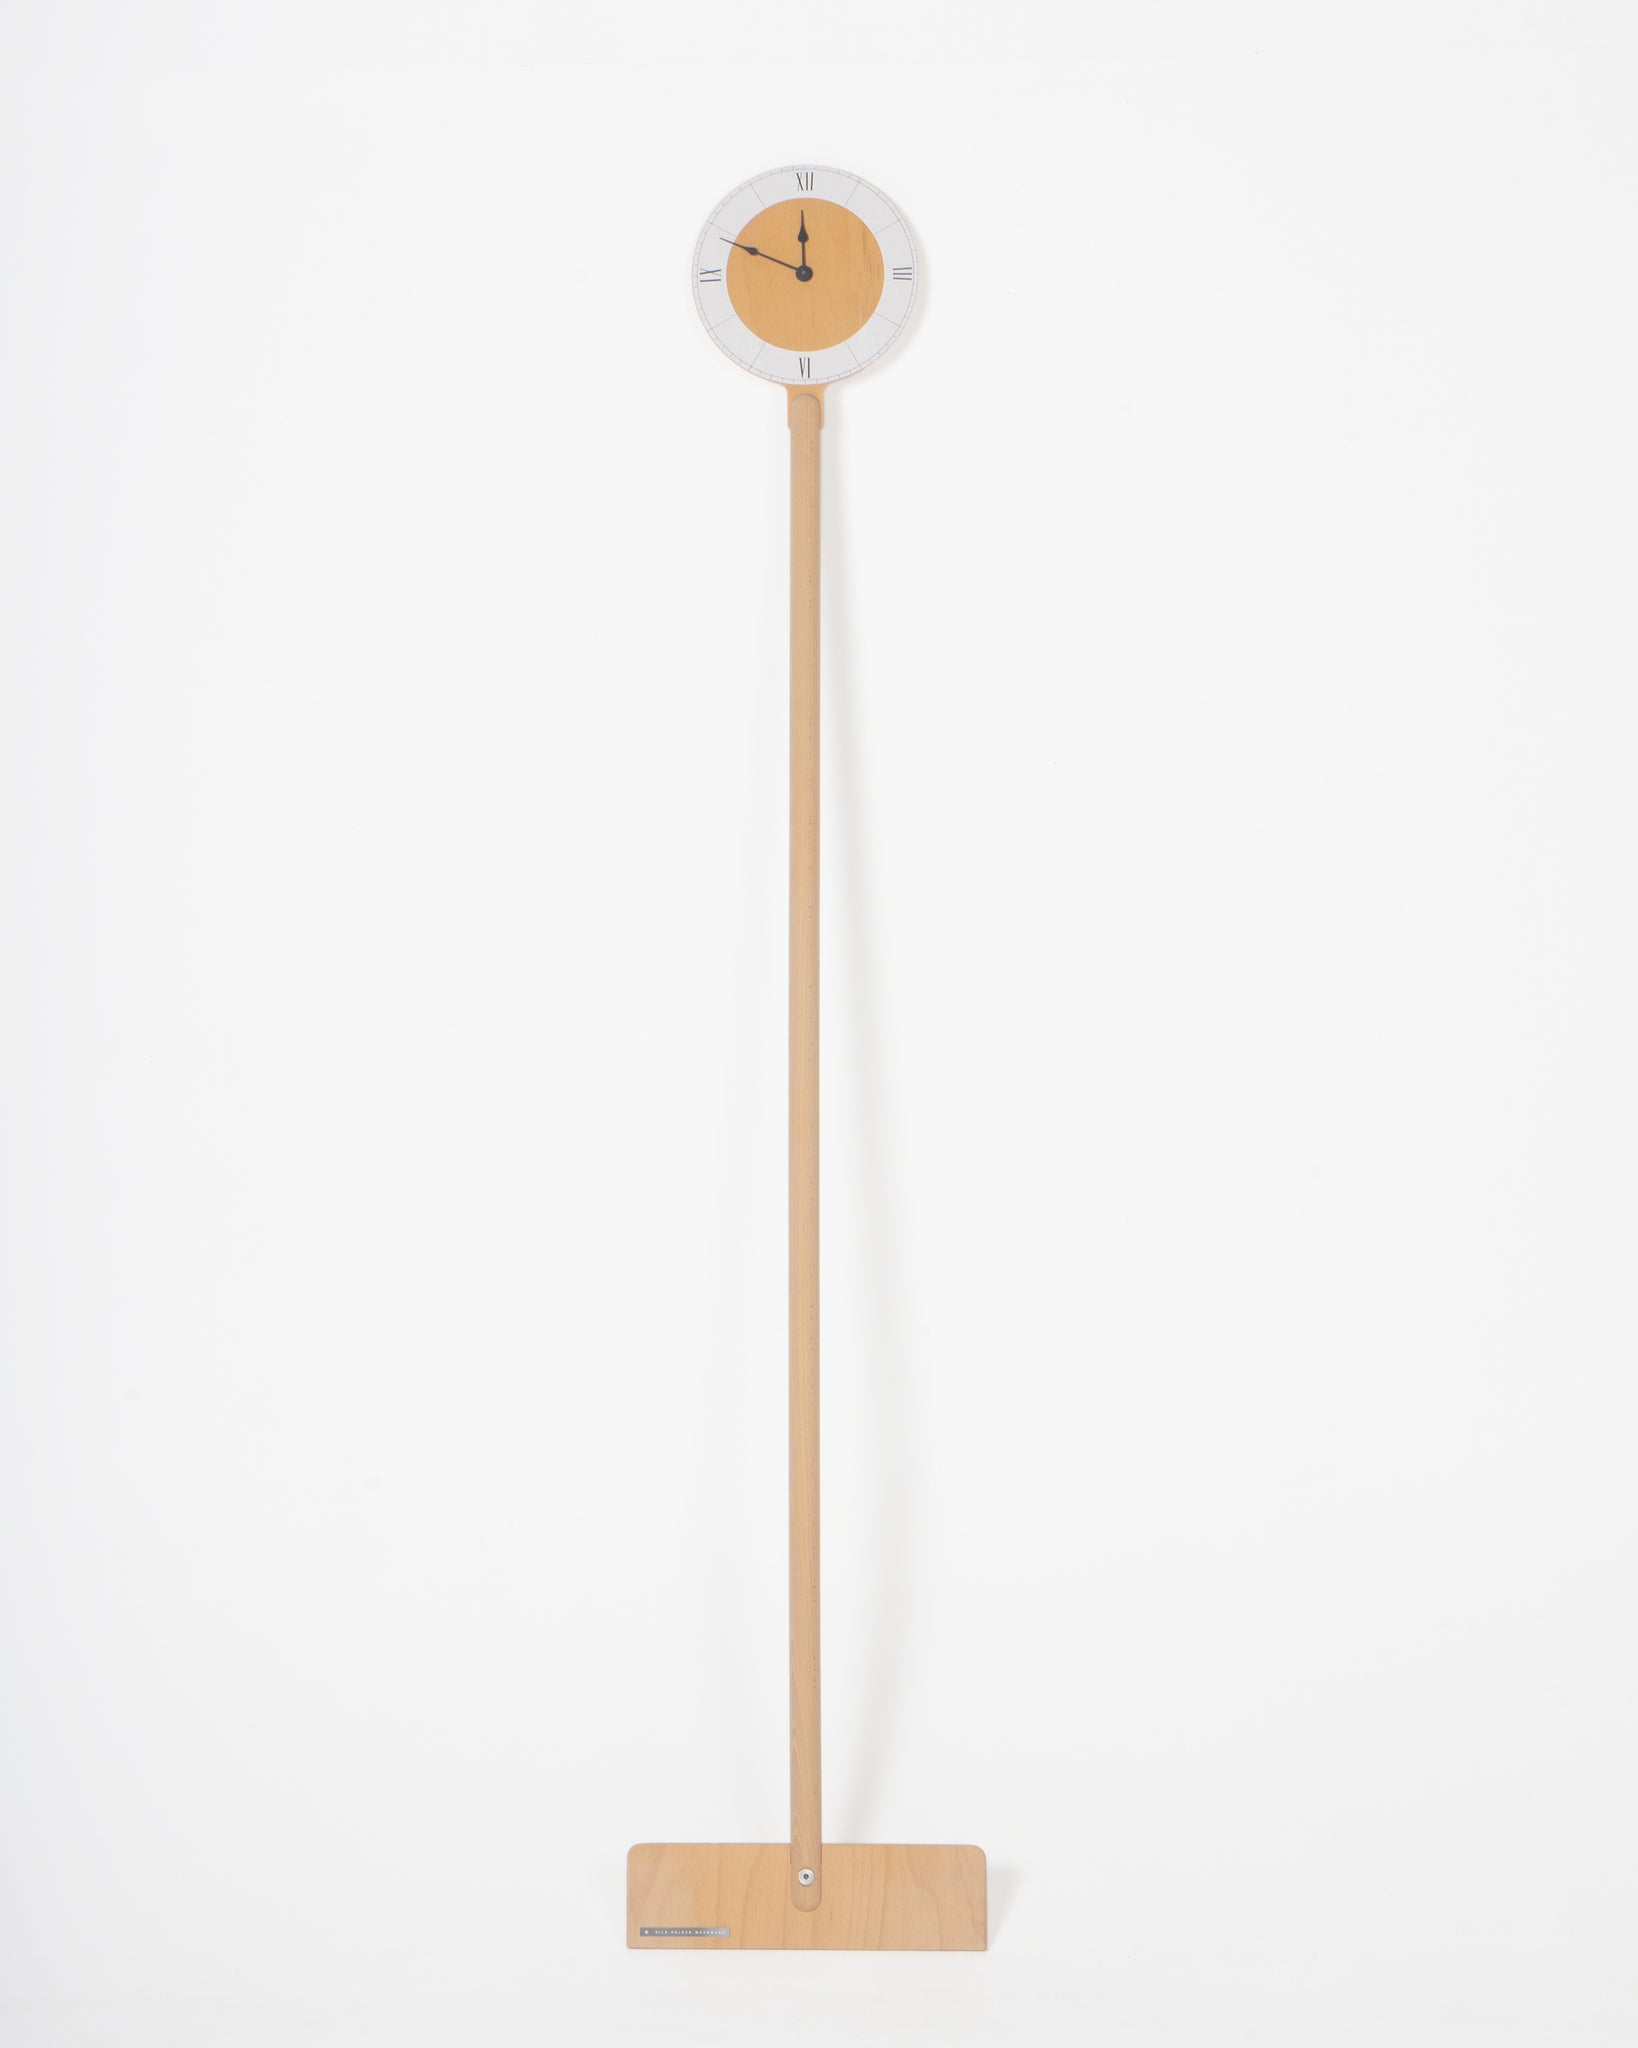 Moormann Uhr James Clock (Einzelstücke)